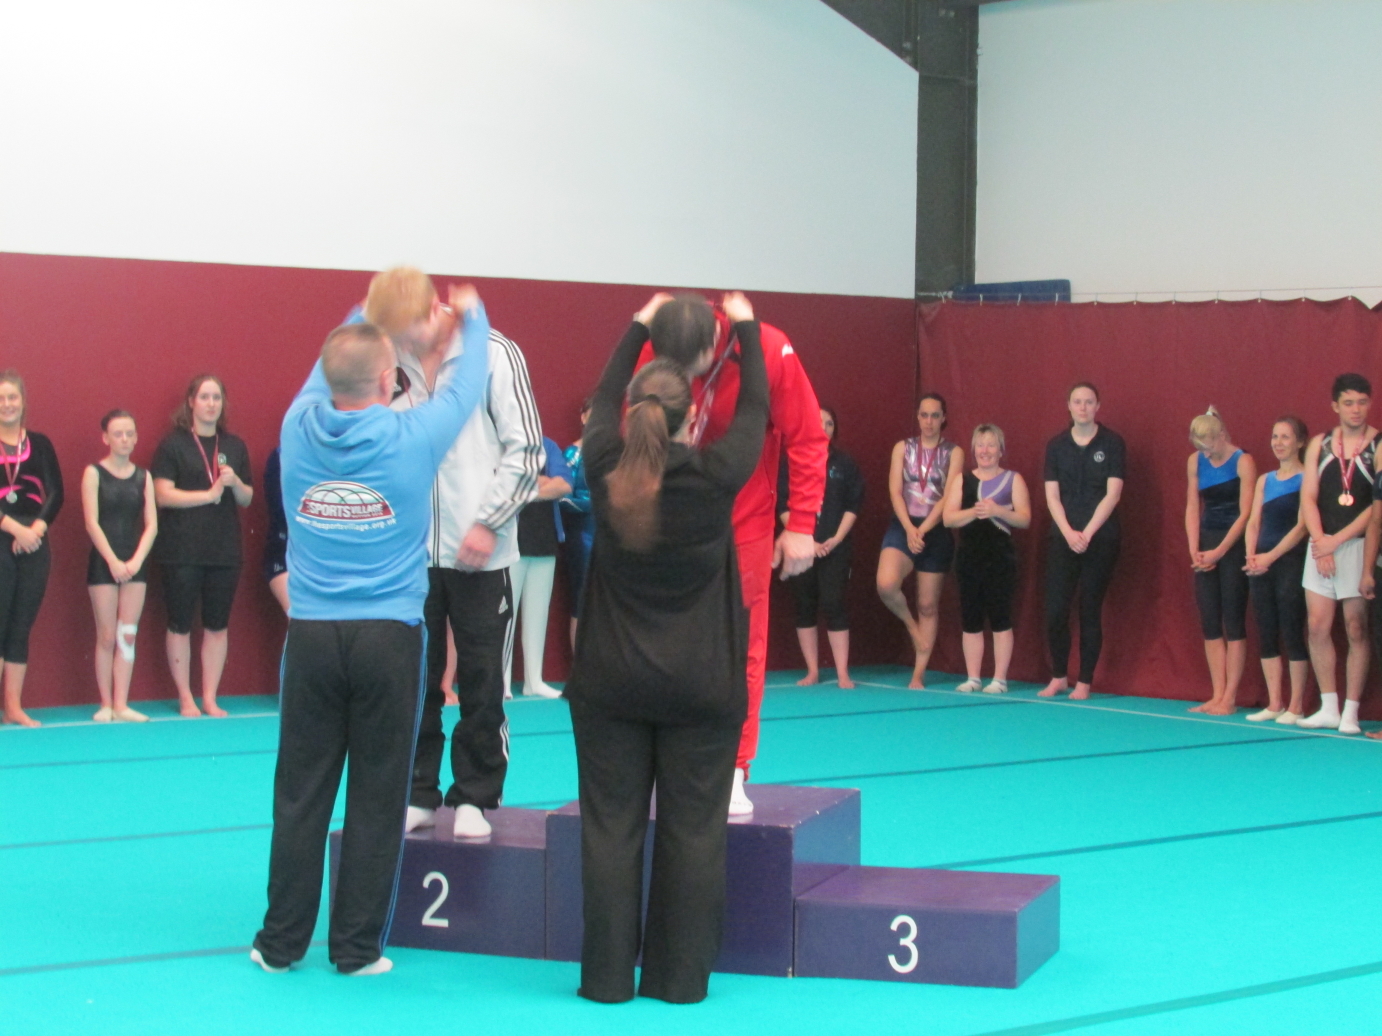 coach Stef - Elite Gymnastics Club, has won a Gold medal